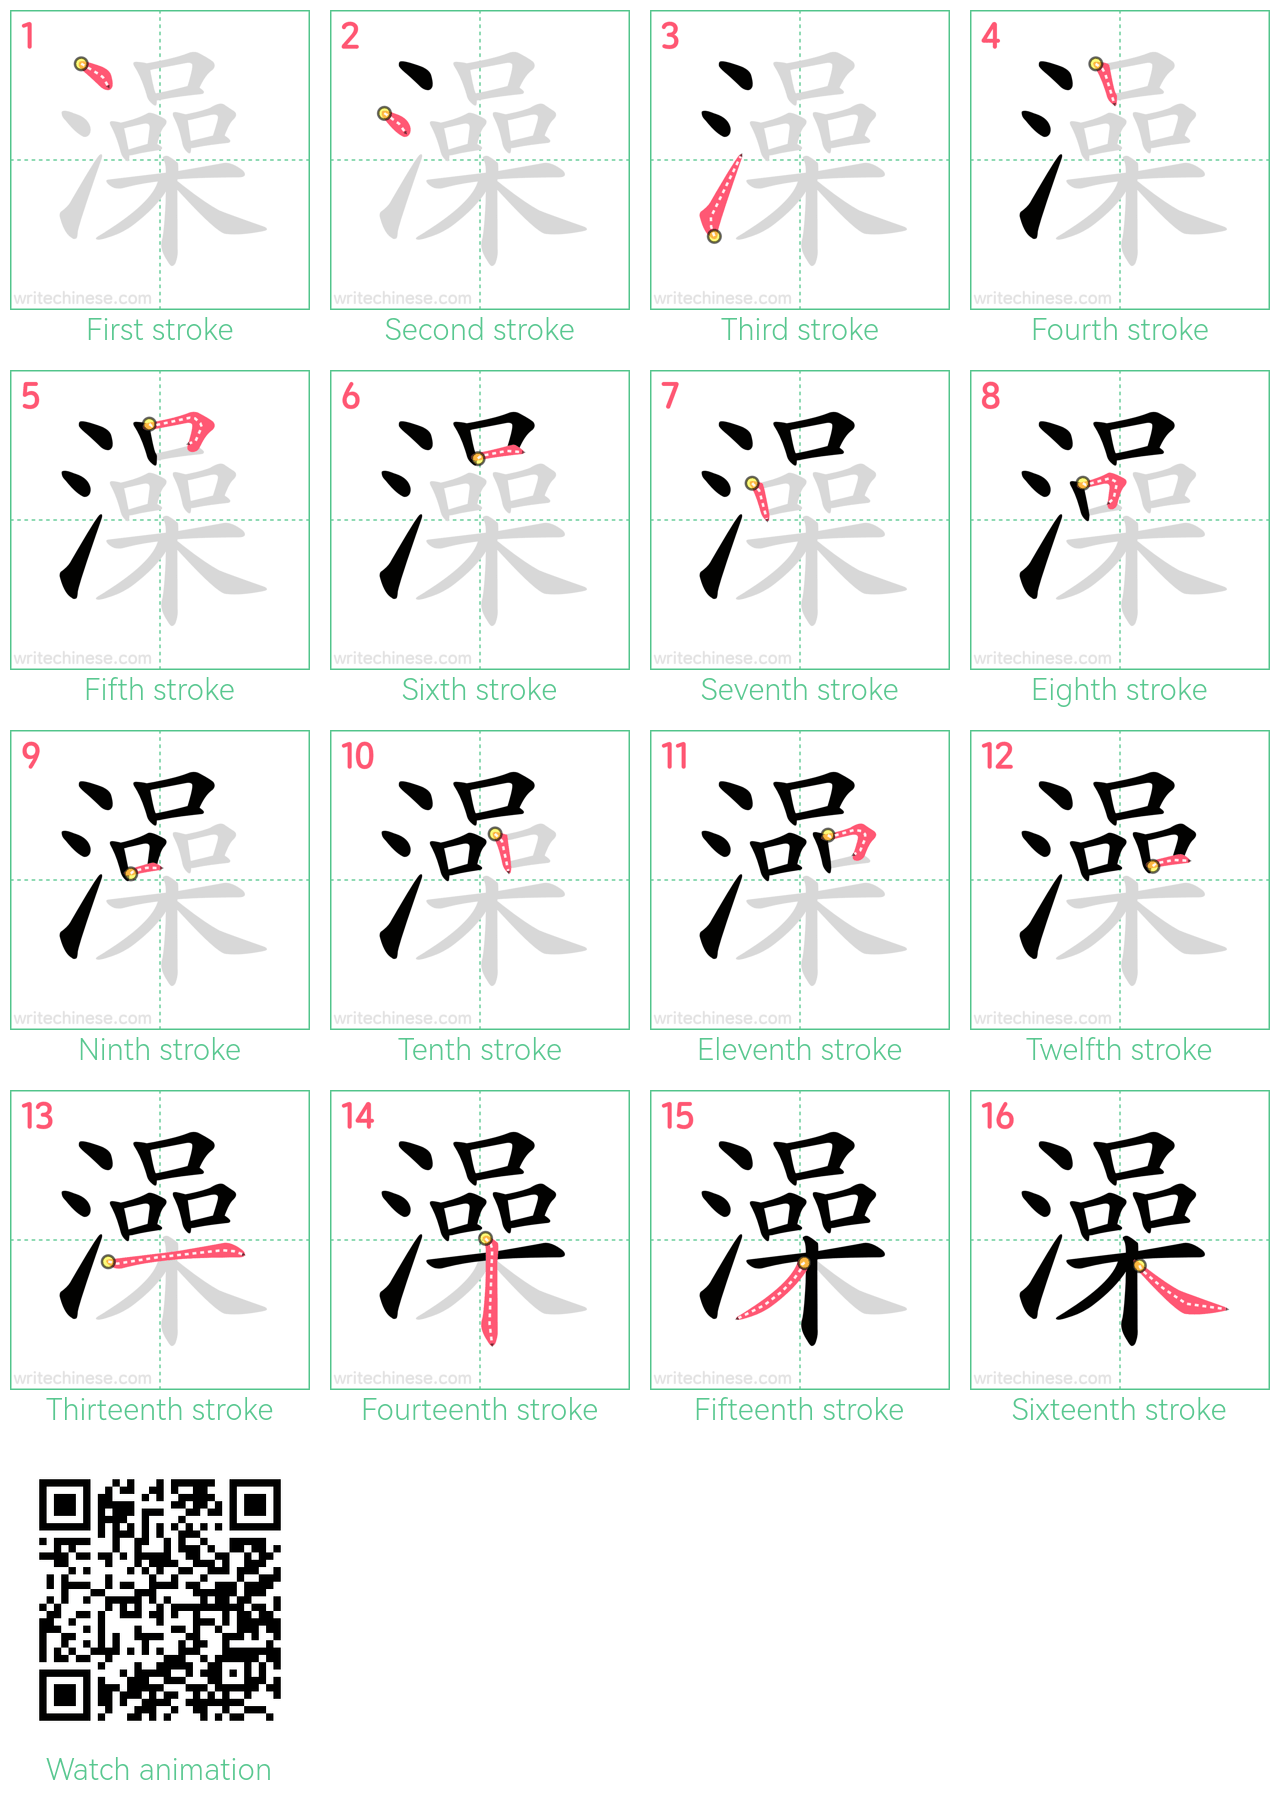 澡 step-by-step stroke order diagrams